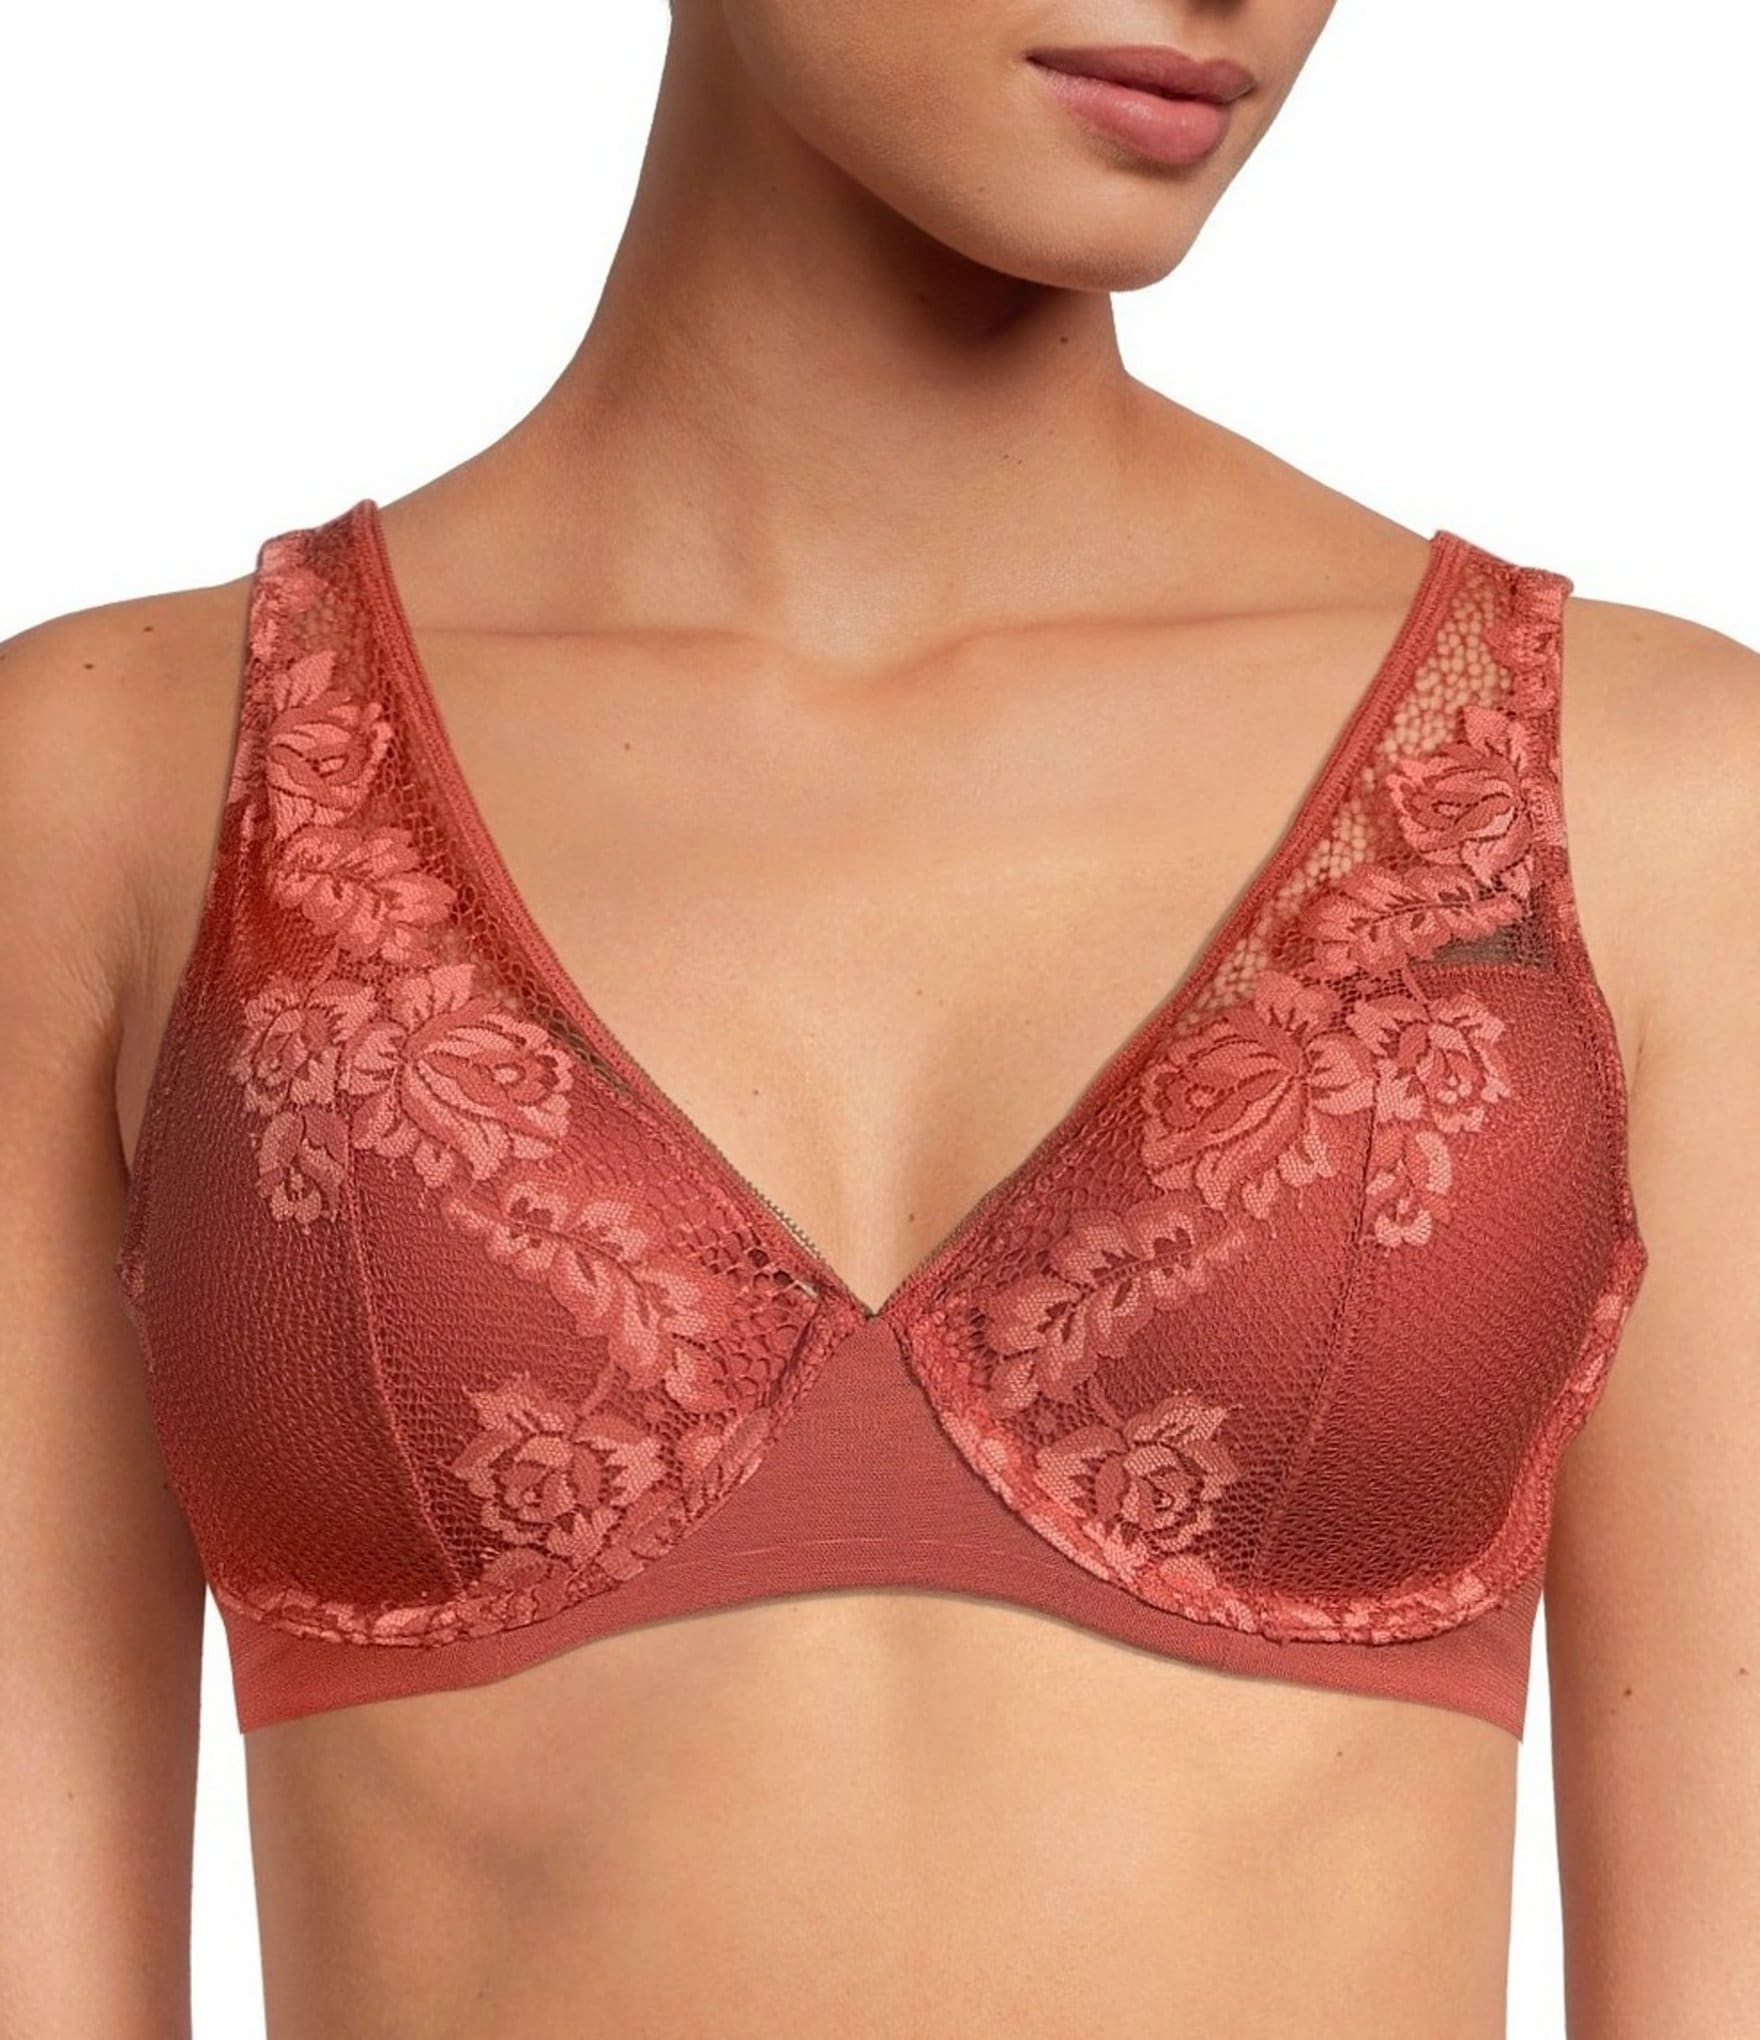 Comfort lace solidarity bra - Woman